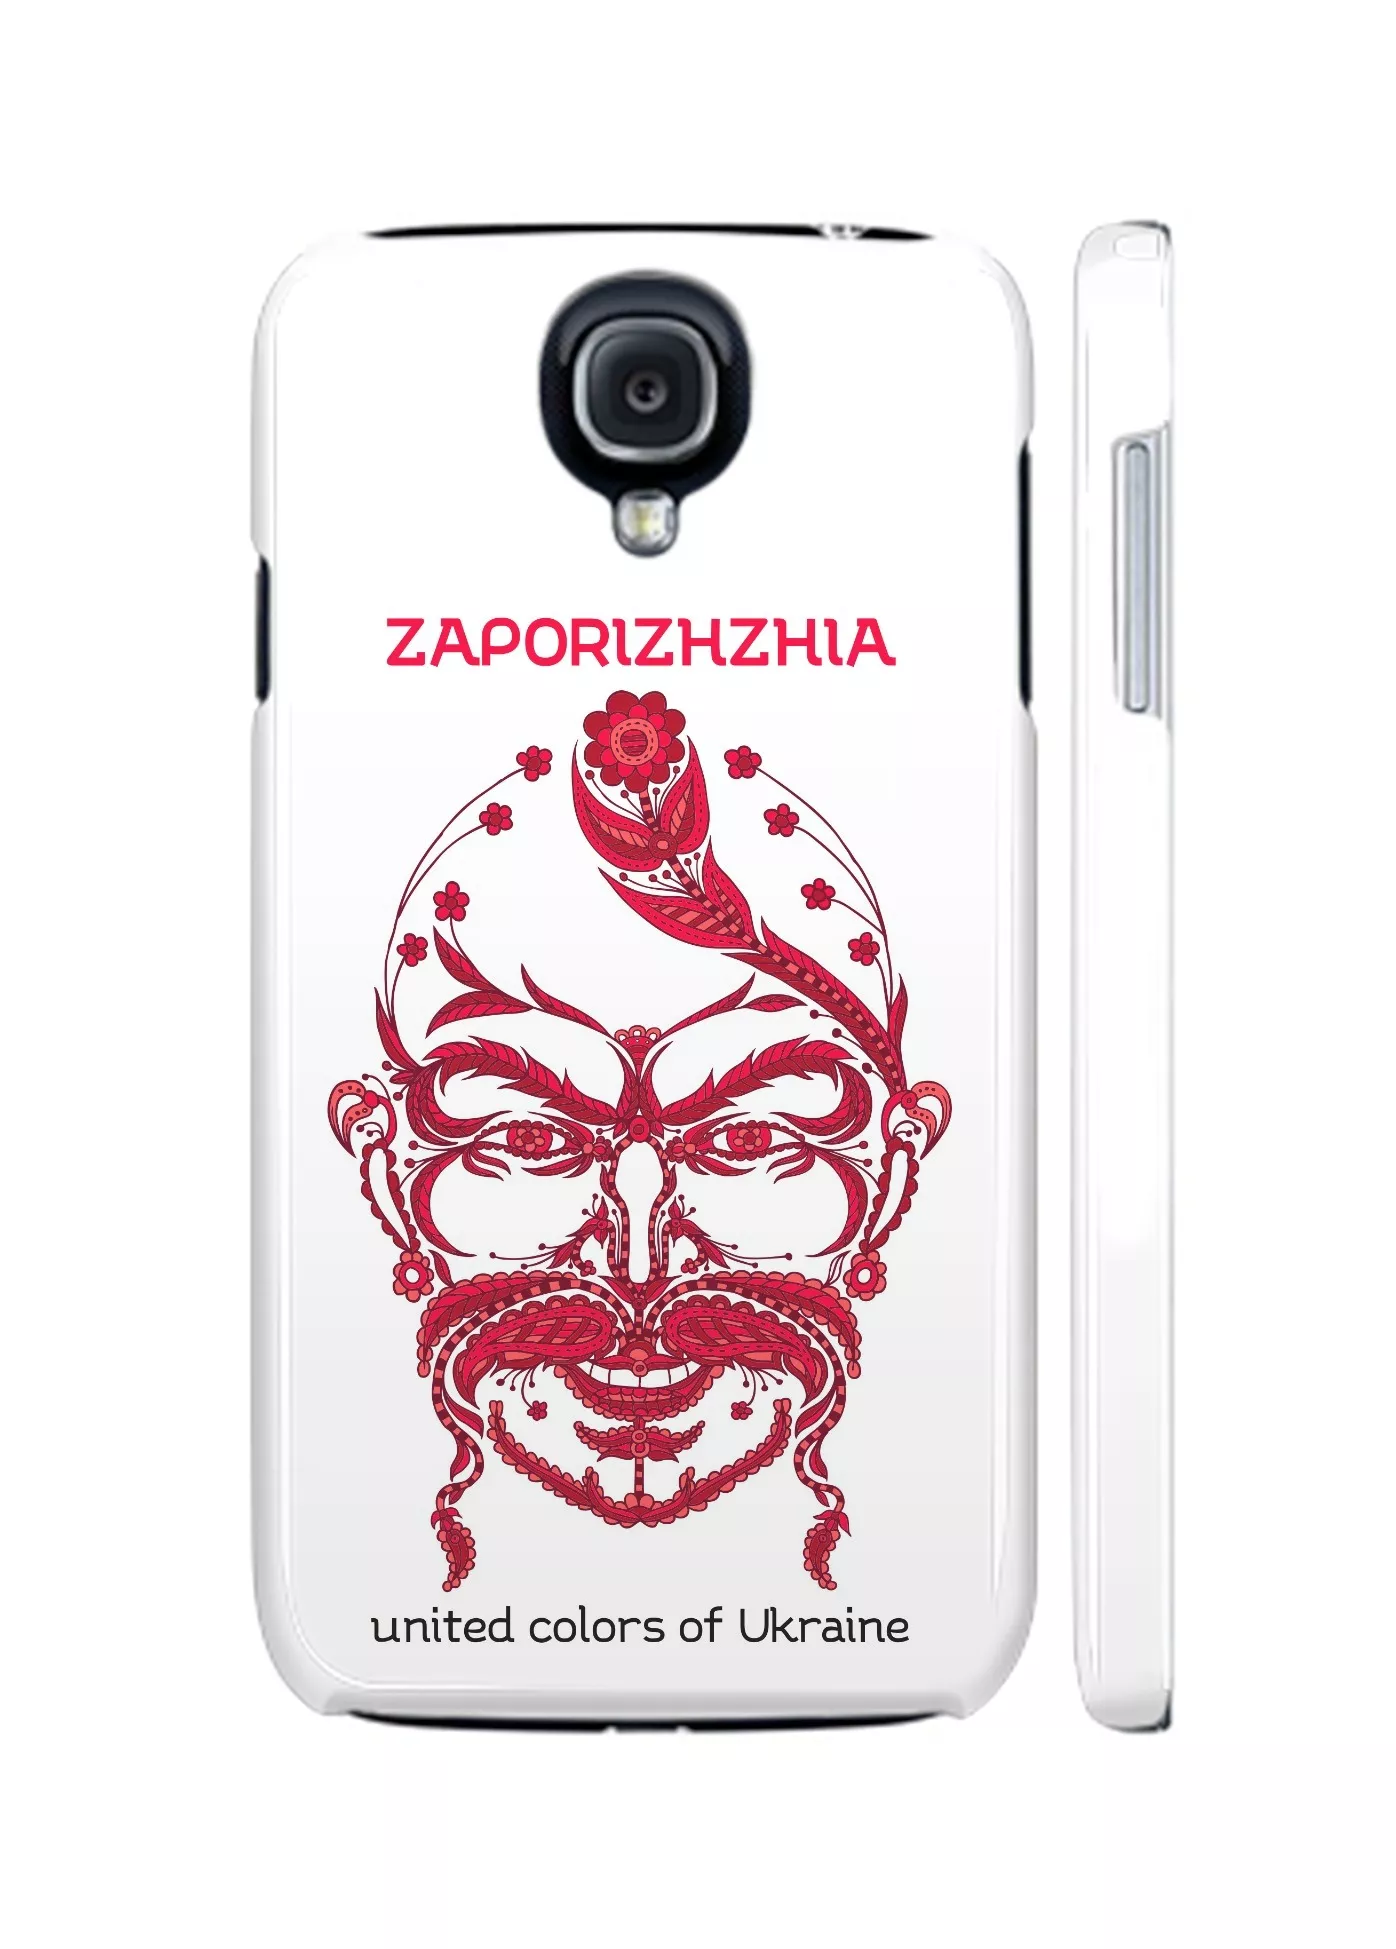 Украинский козак на чехле Galaxy S4